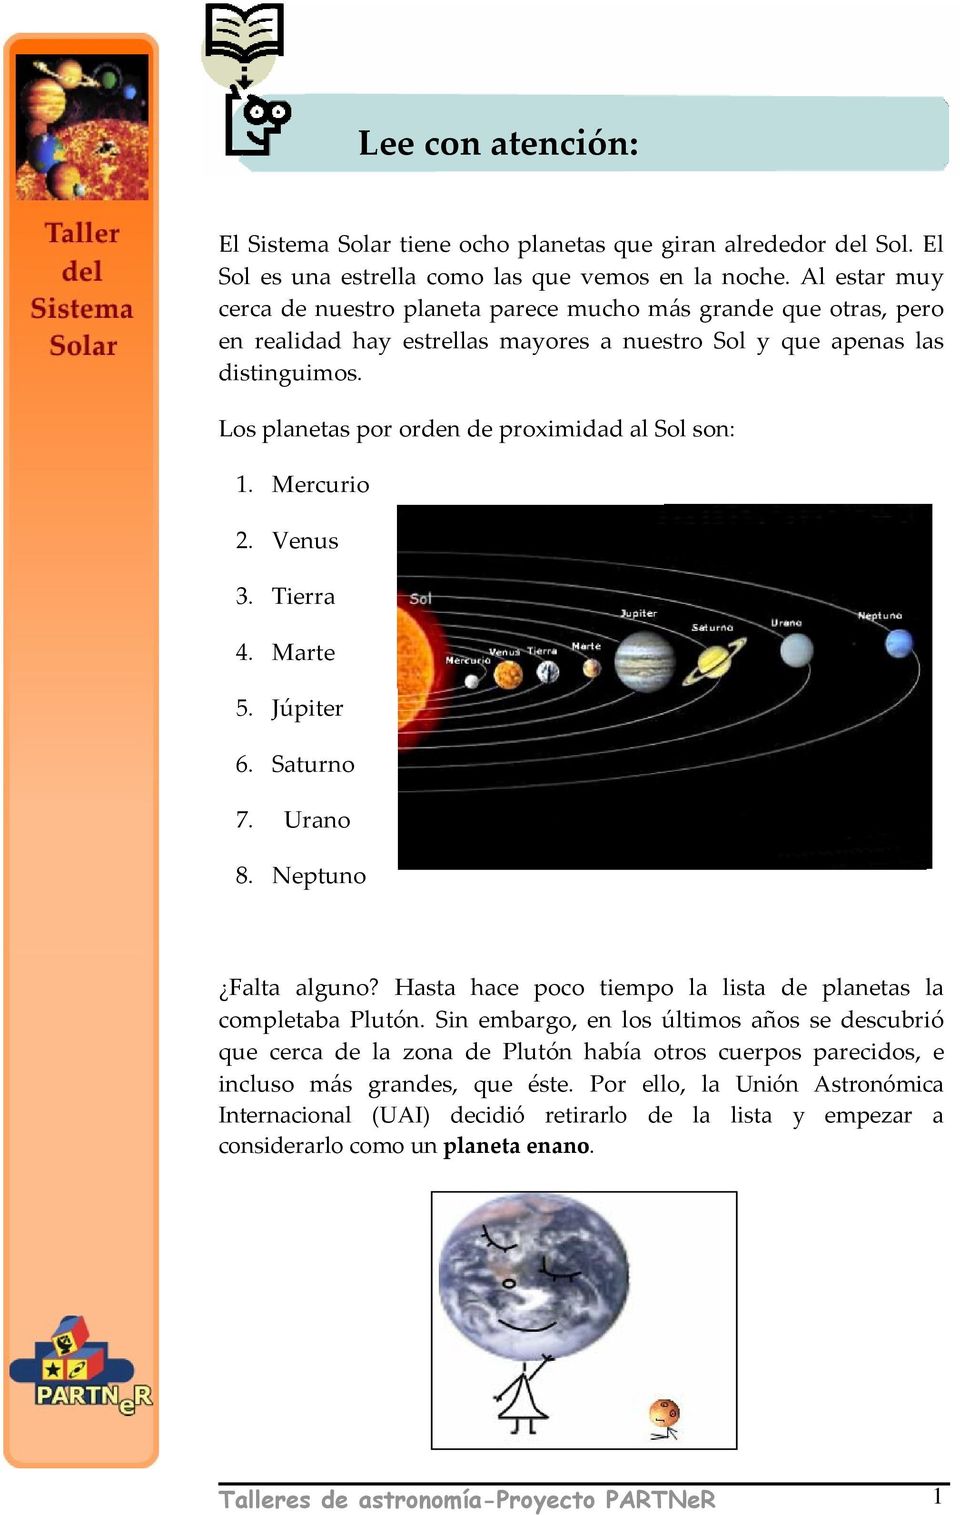 Los planetas por orden de proximidad al Sol son: 1. Mercurio 2. Venus 3. Tierra 4. Marte 5. Júpiter 6. Saturno 7. Urano 8. Neptuno Falta alguno?